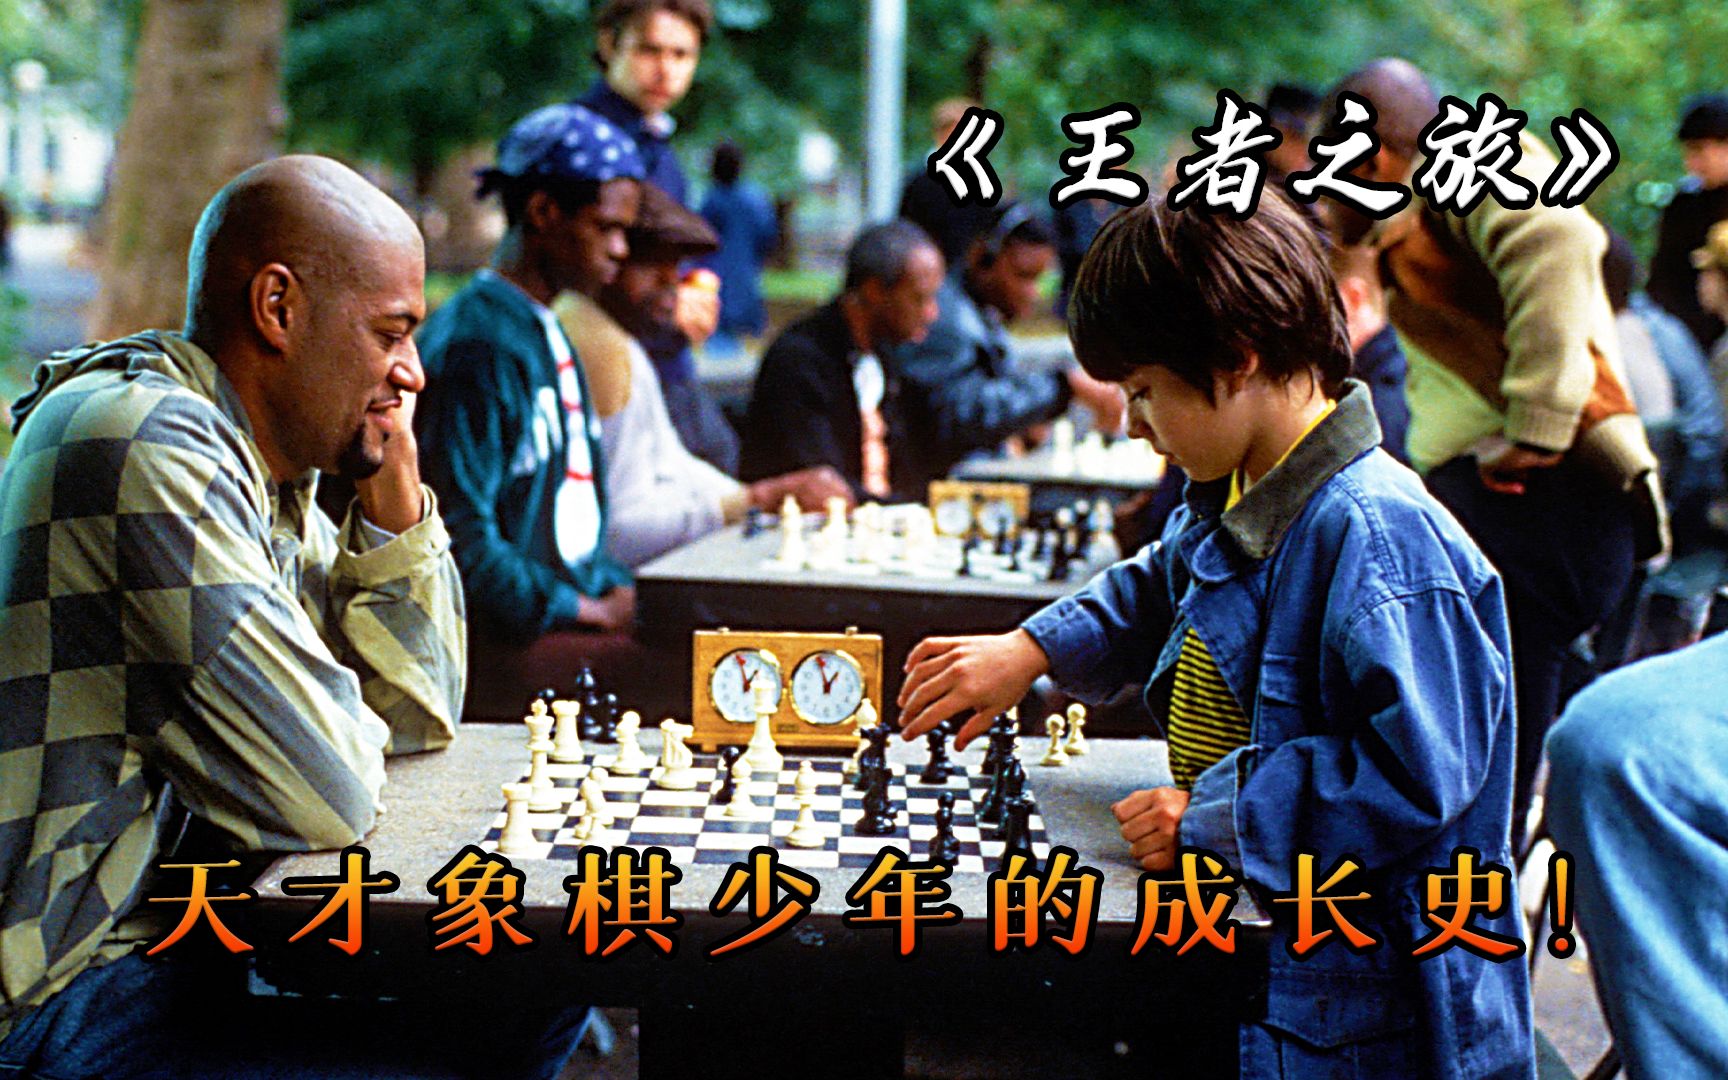 真实故事改编，7岁天才国际象棋手的成长之路，电影《王者之旅》